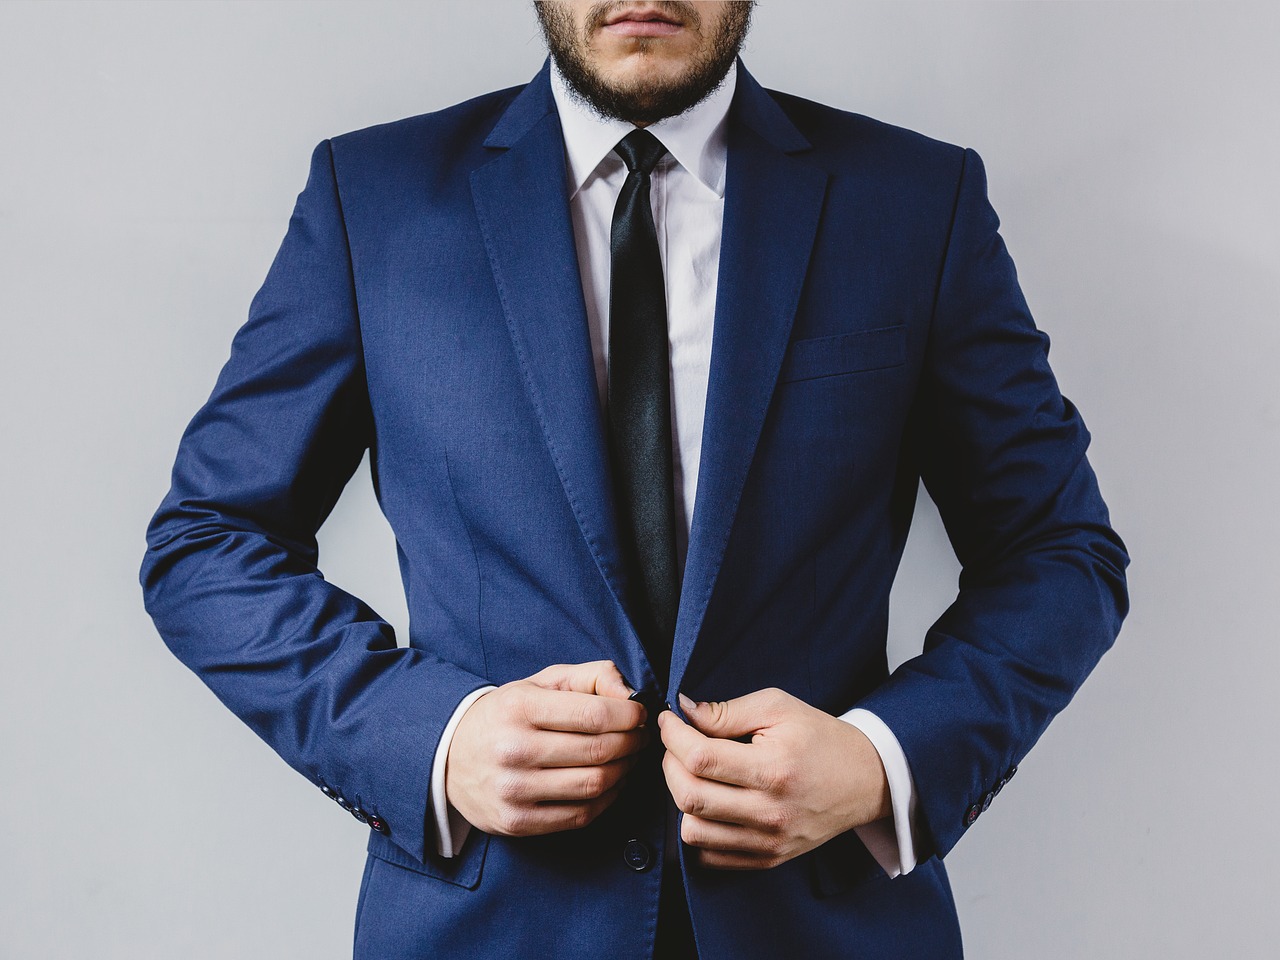 Image - suit tie blazer fashion clothes